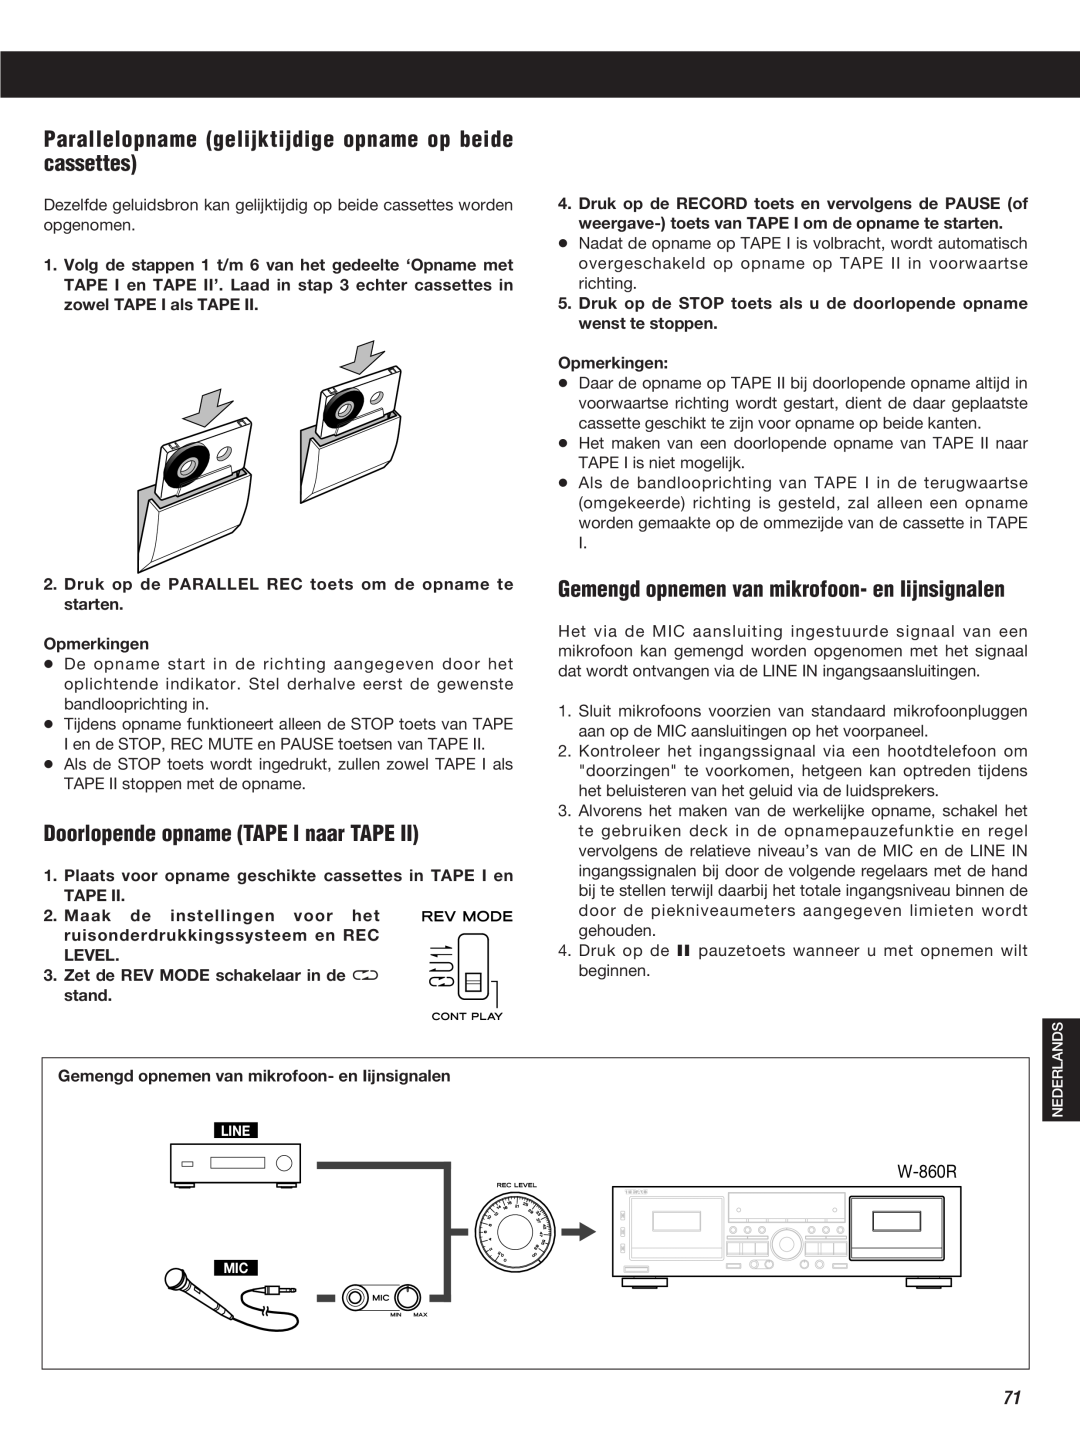 Teac W-860R owner manual Doorlopende opname TAPE I naar TAPE, Gemengd opnemen van mikrofoon- en Iijnsignalen 